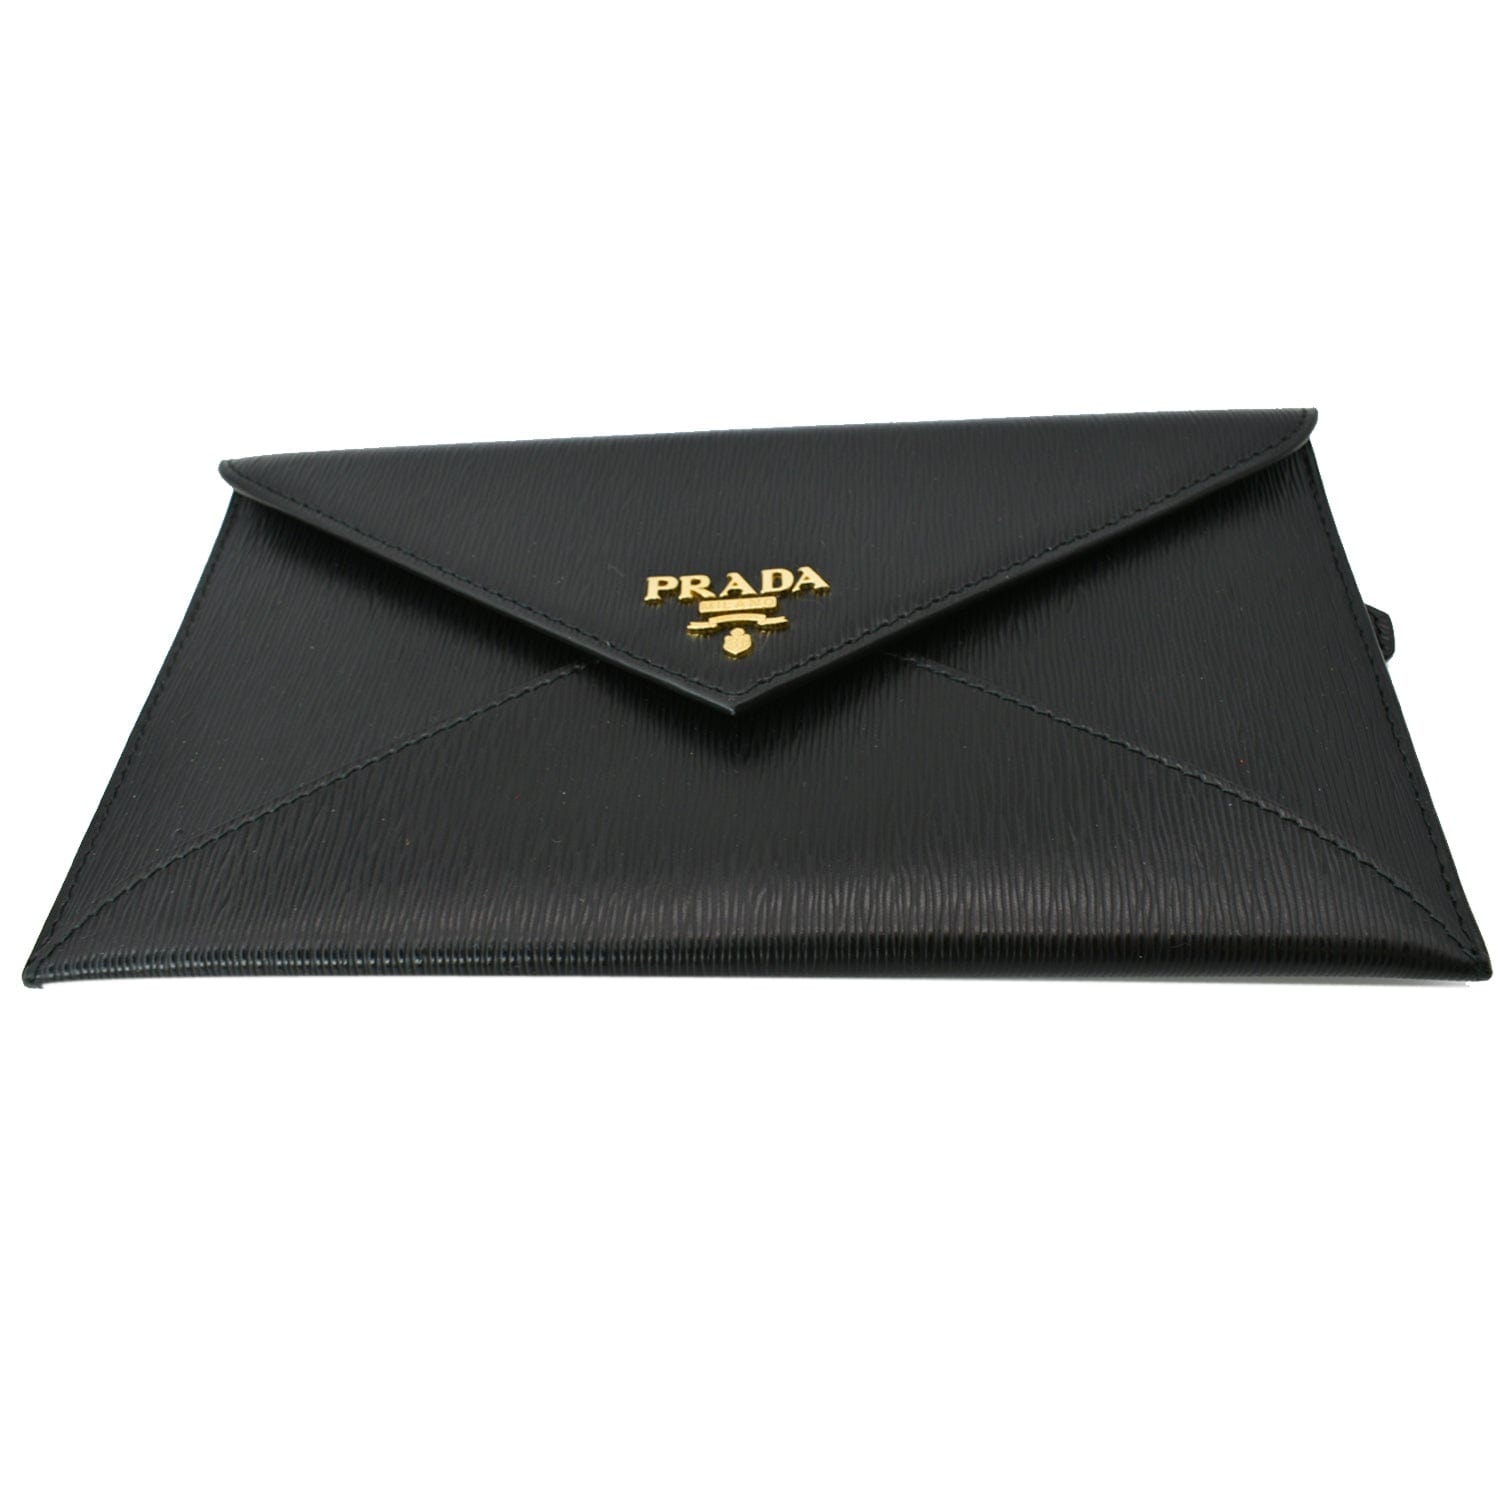 Black Leather Envelope Wallet